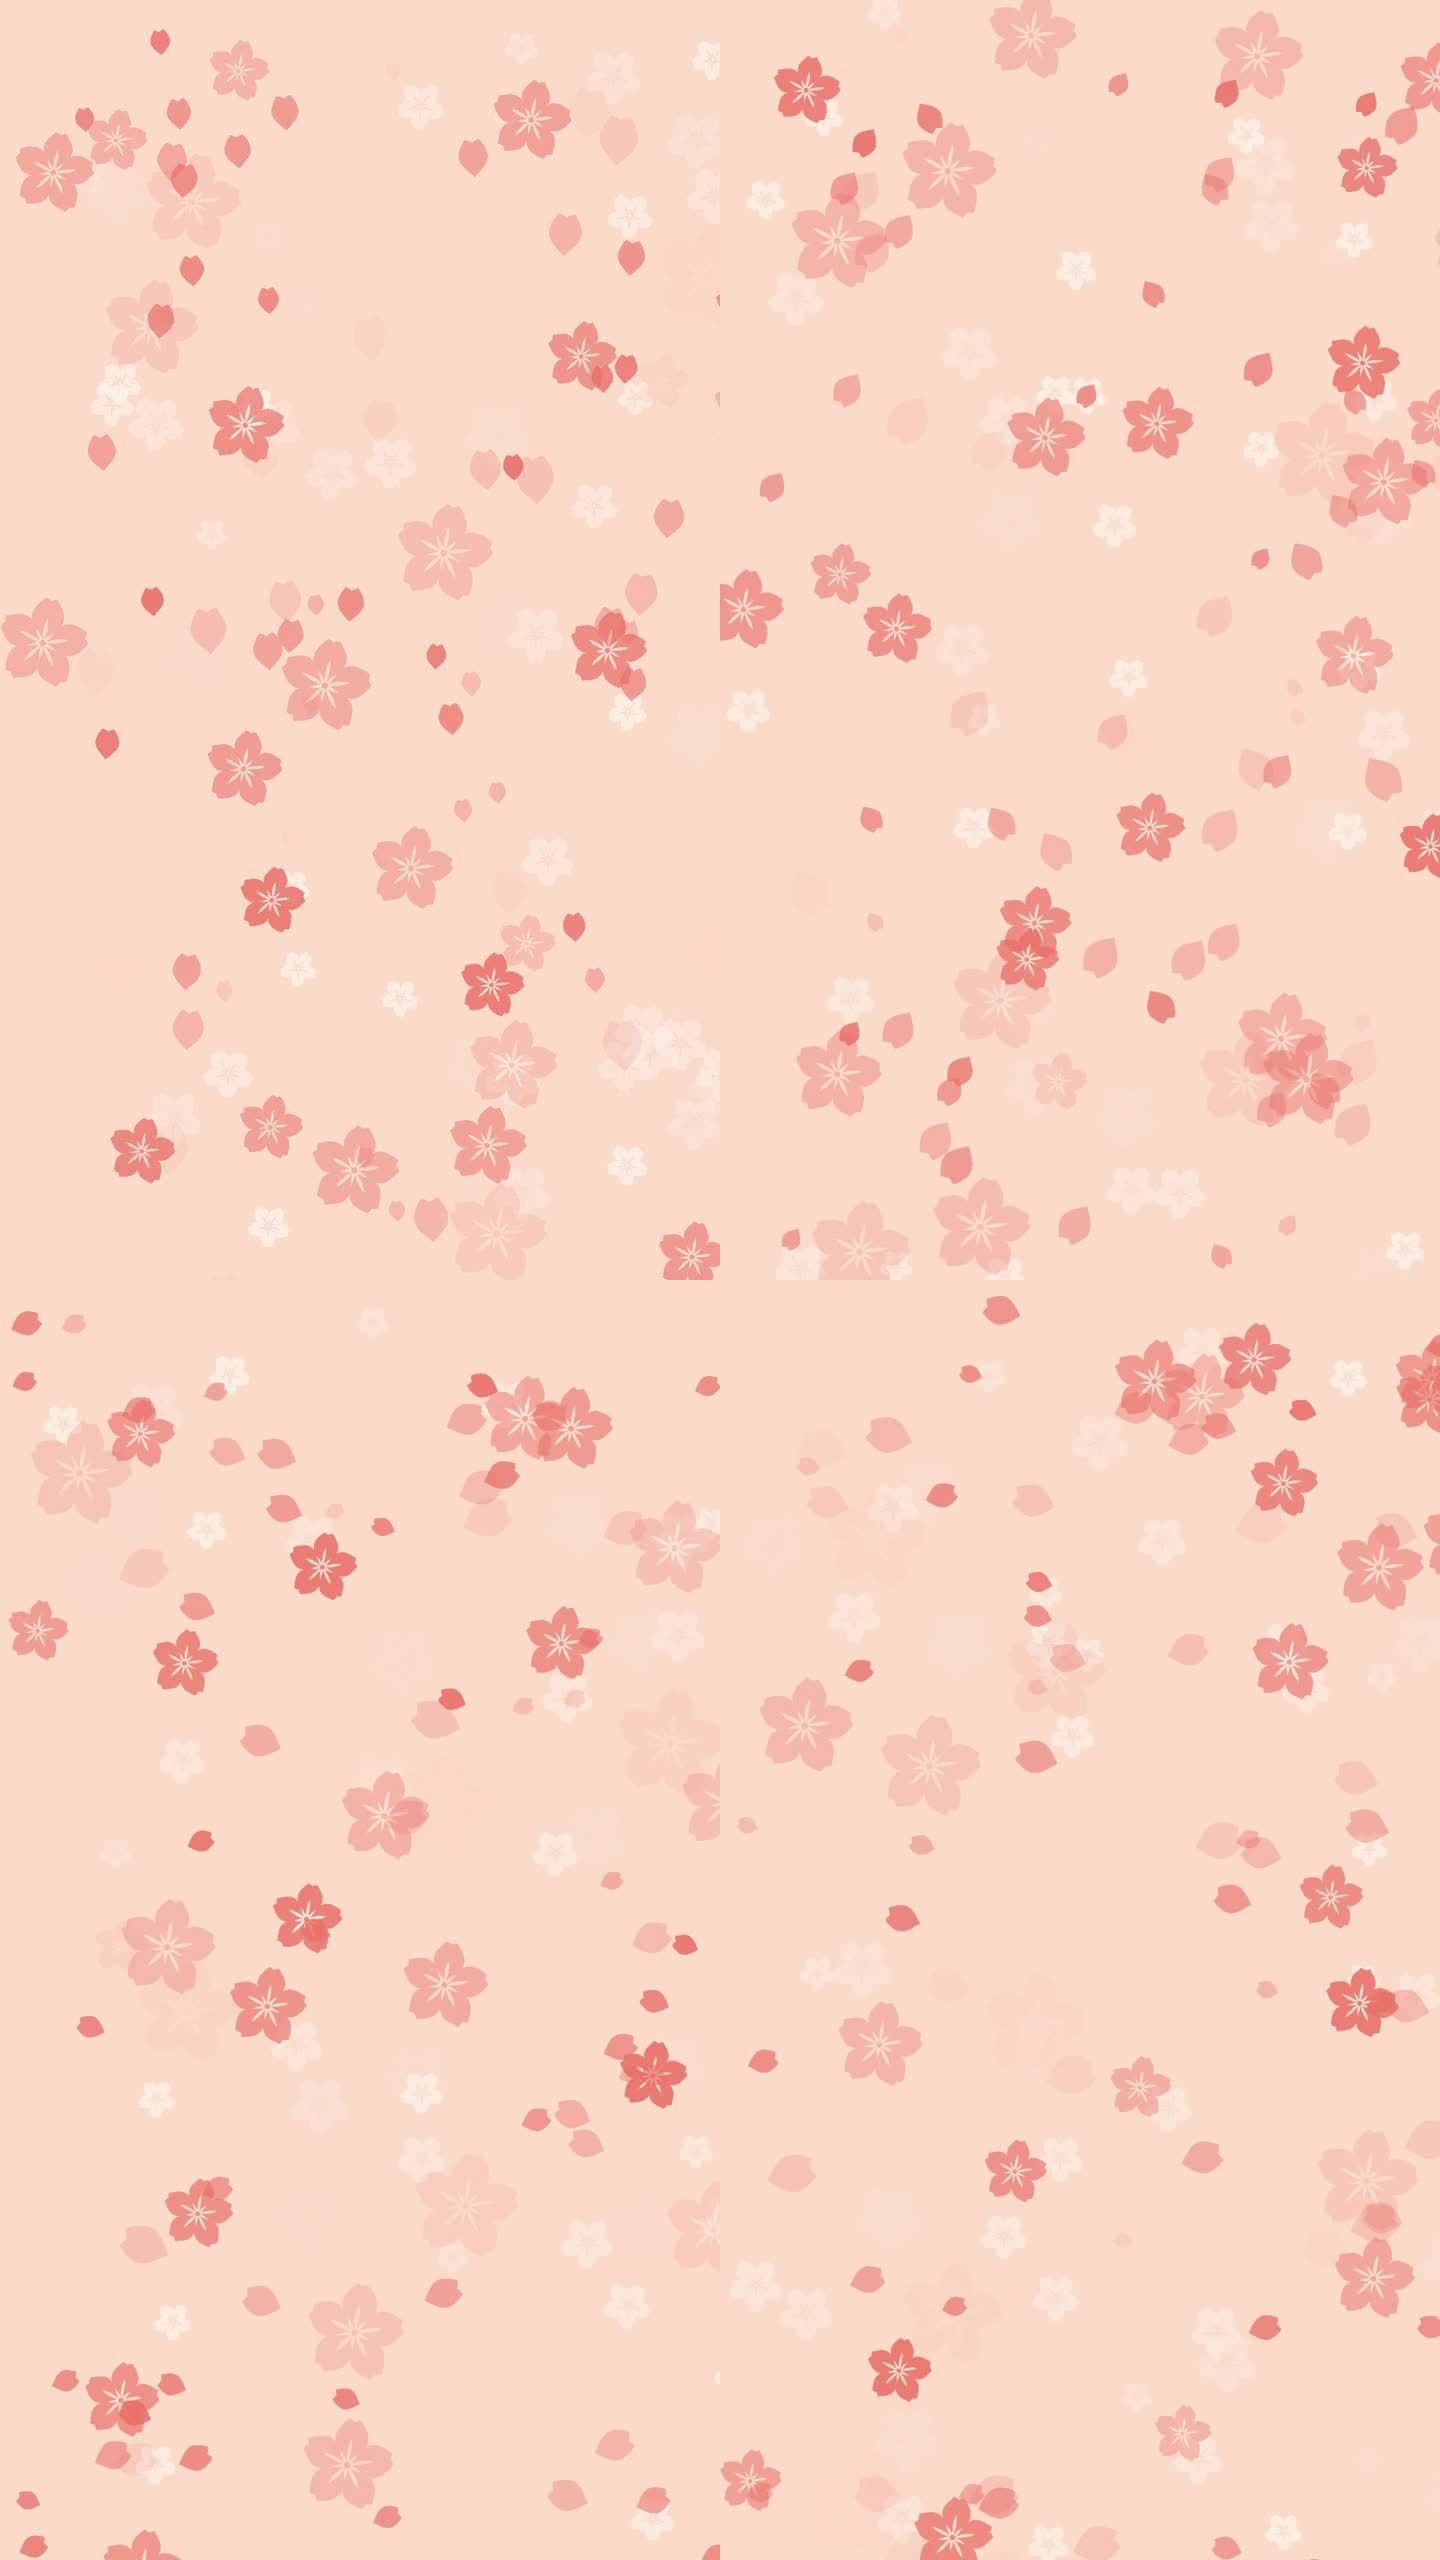 淡淡桃色背景上抽象的樱花